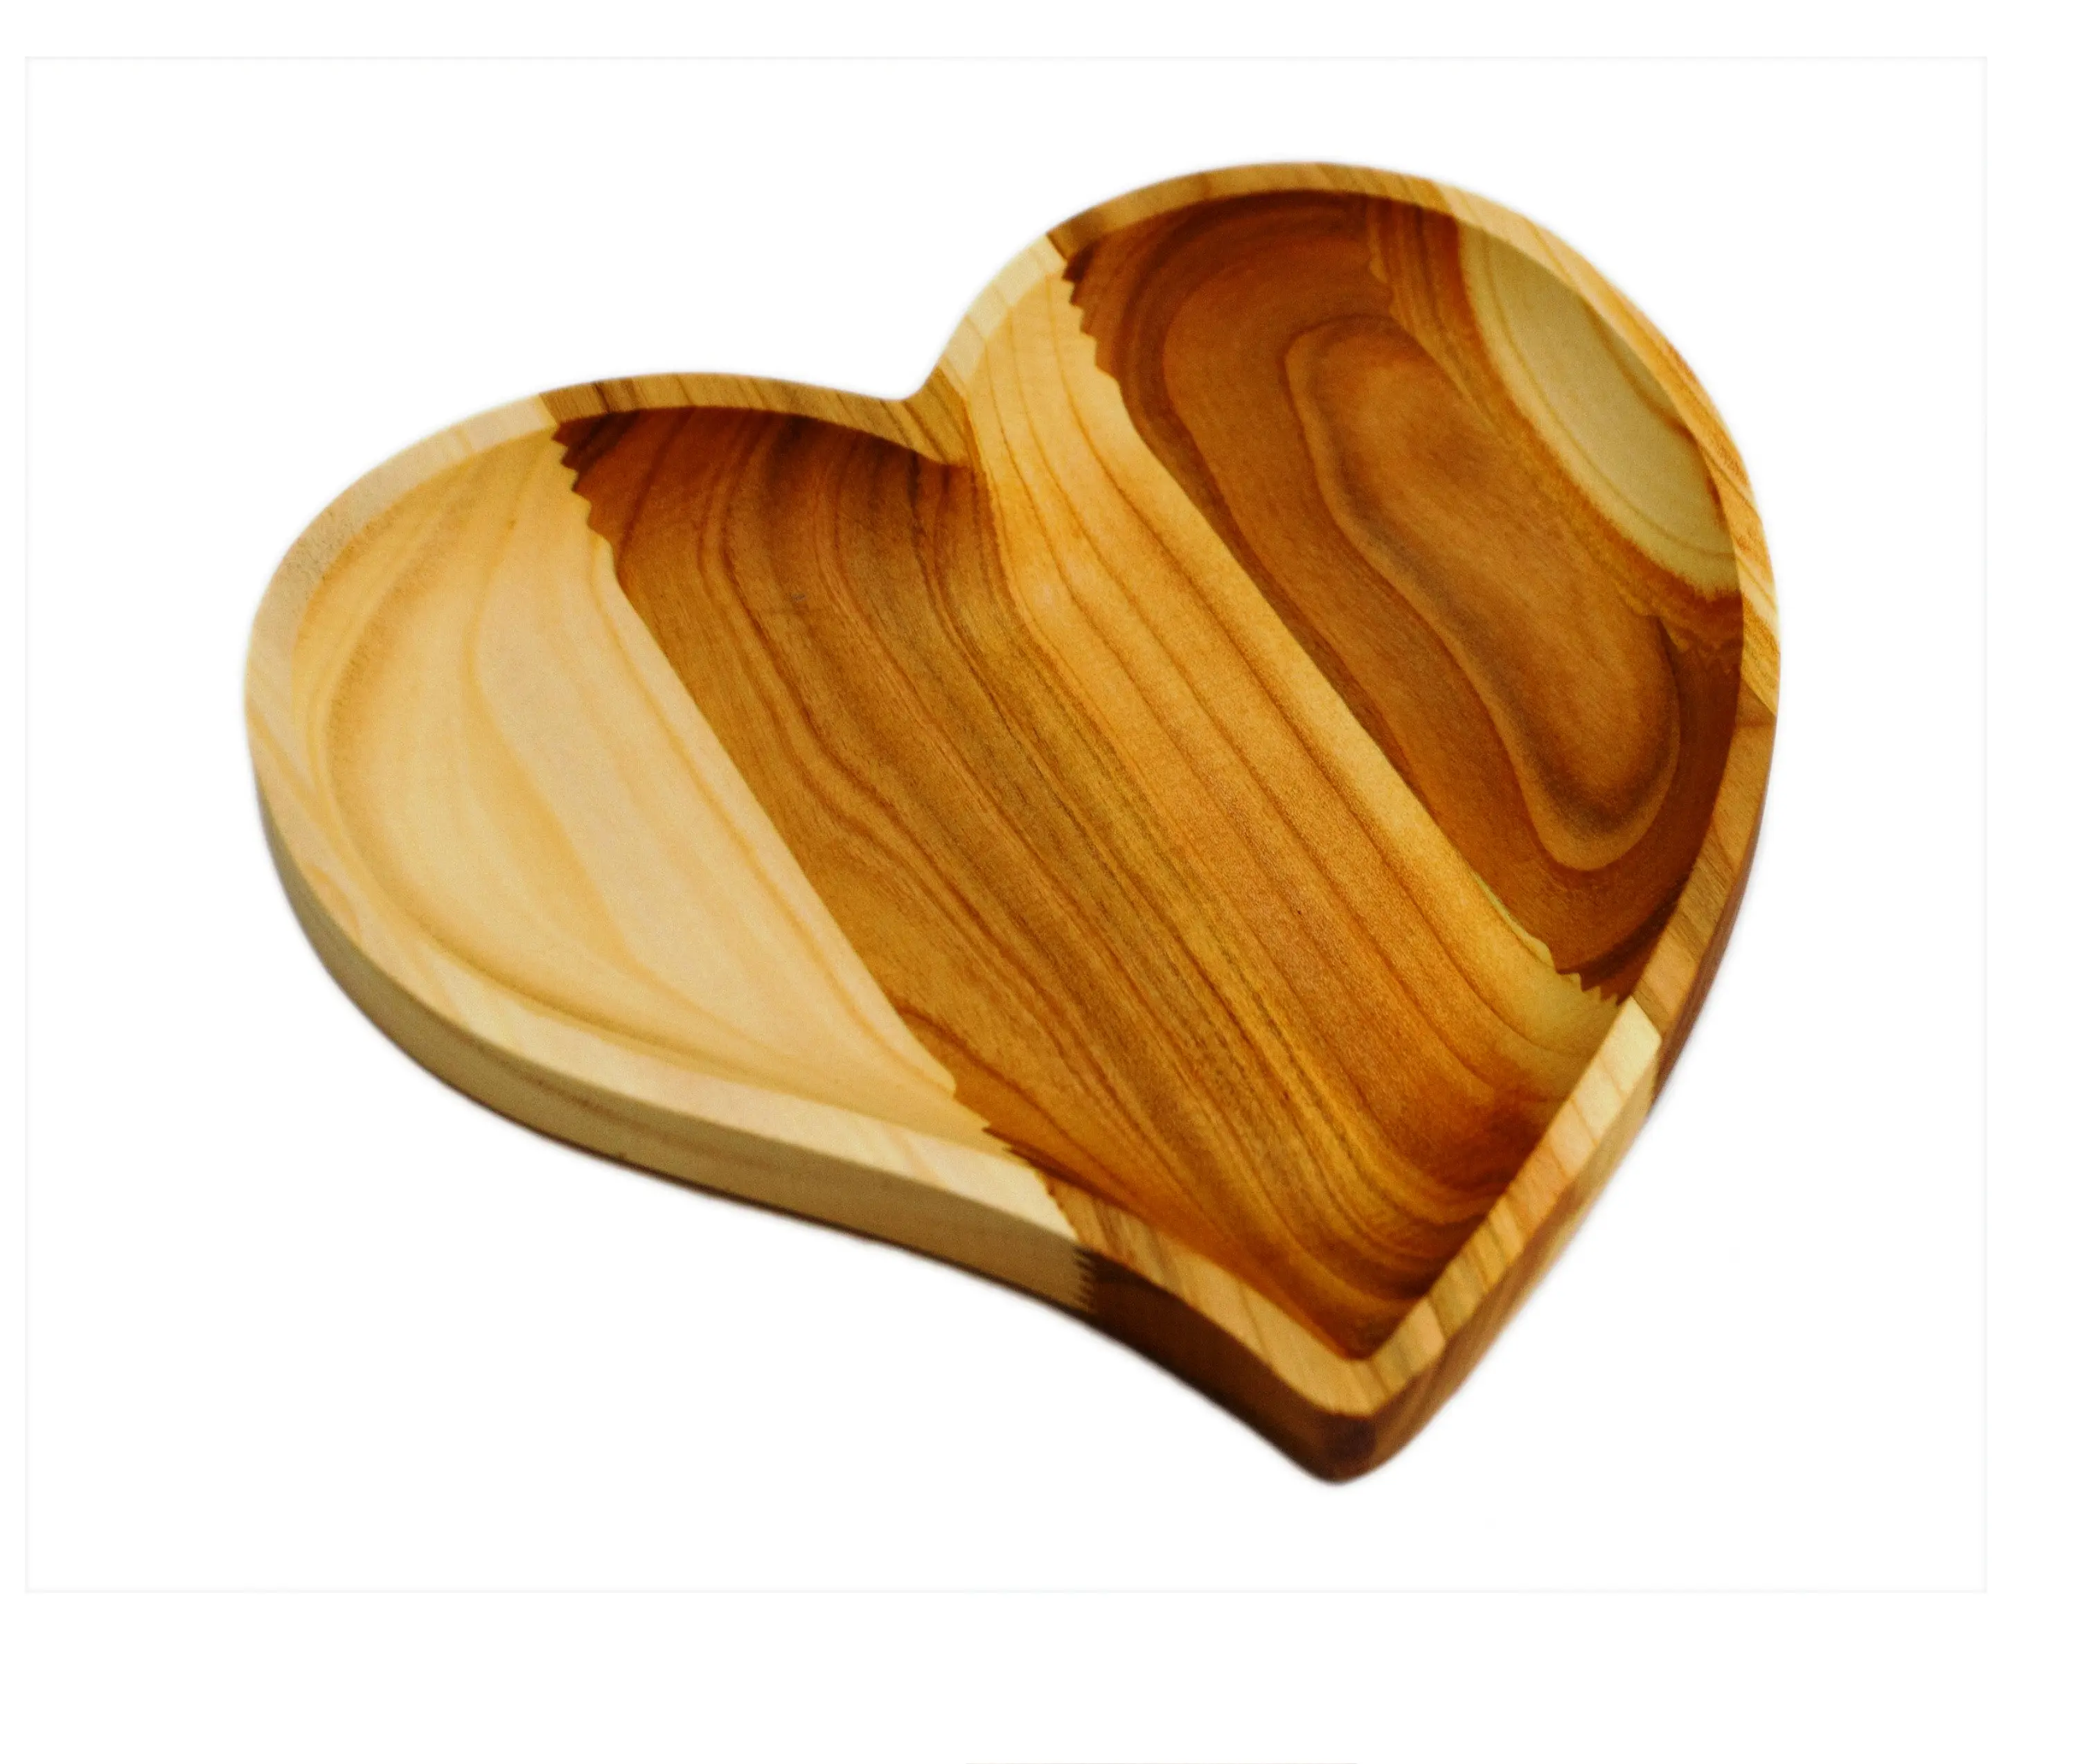 Bandeja de servir em forma de coração, melhor ideia romântica, prato de servir em madeira, produto artesanal e sustentável de alta qualidade, compre